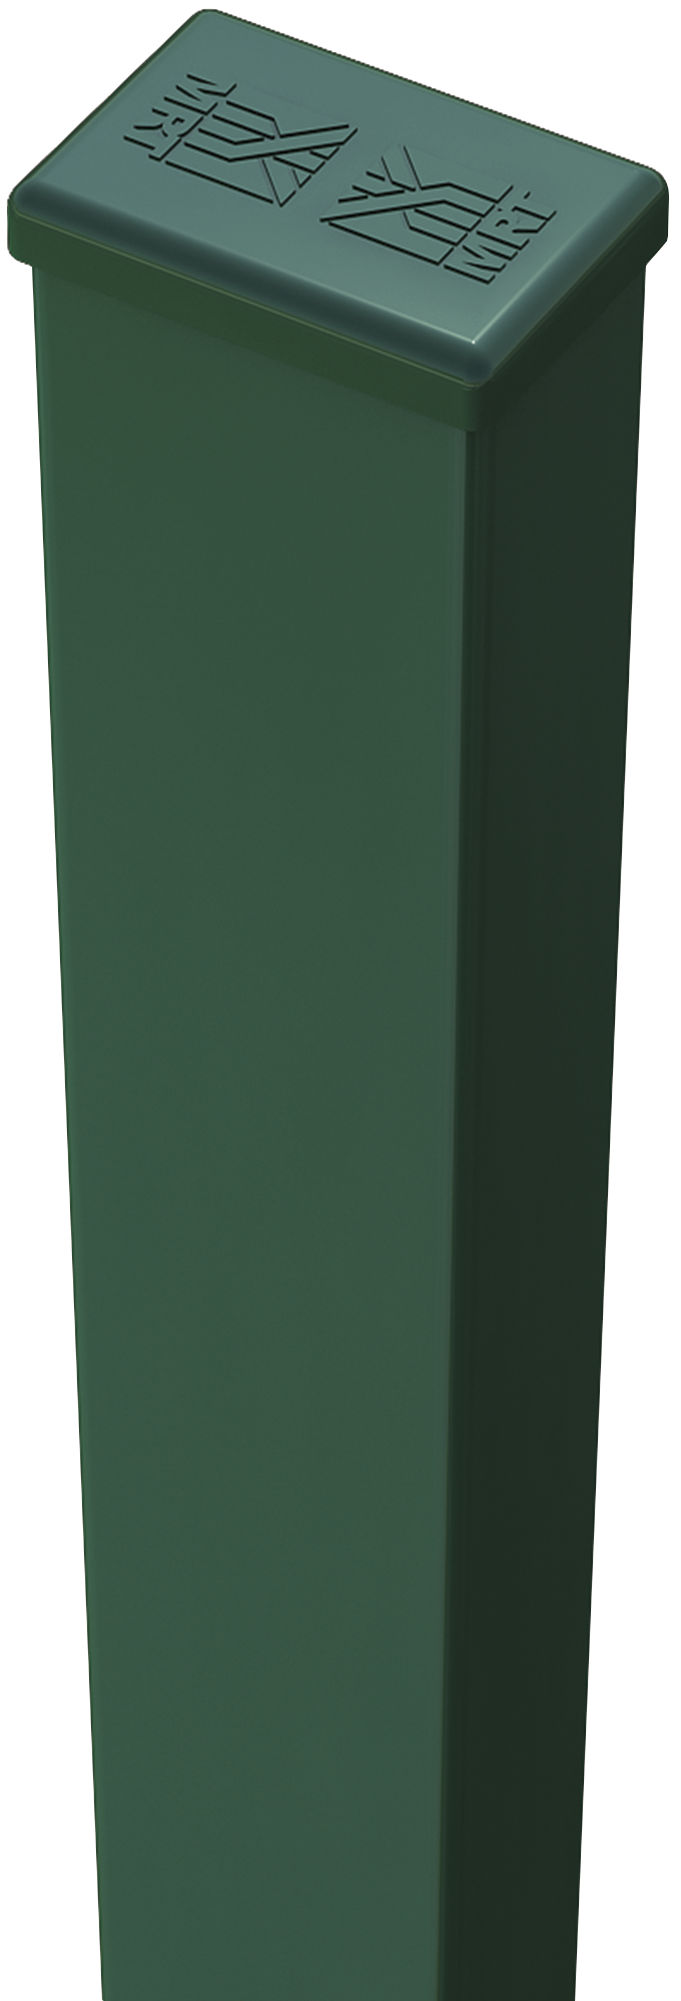 Poste de verde de 40mm y 155 cm